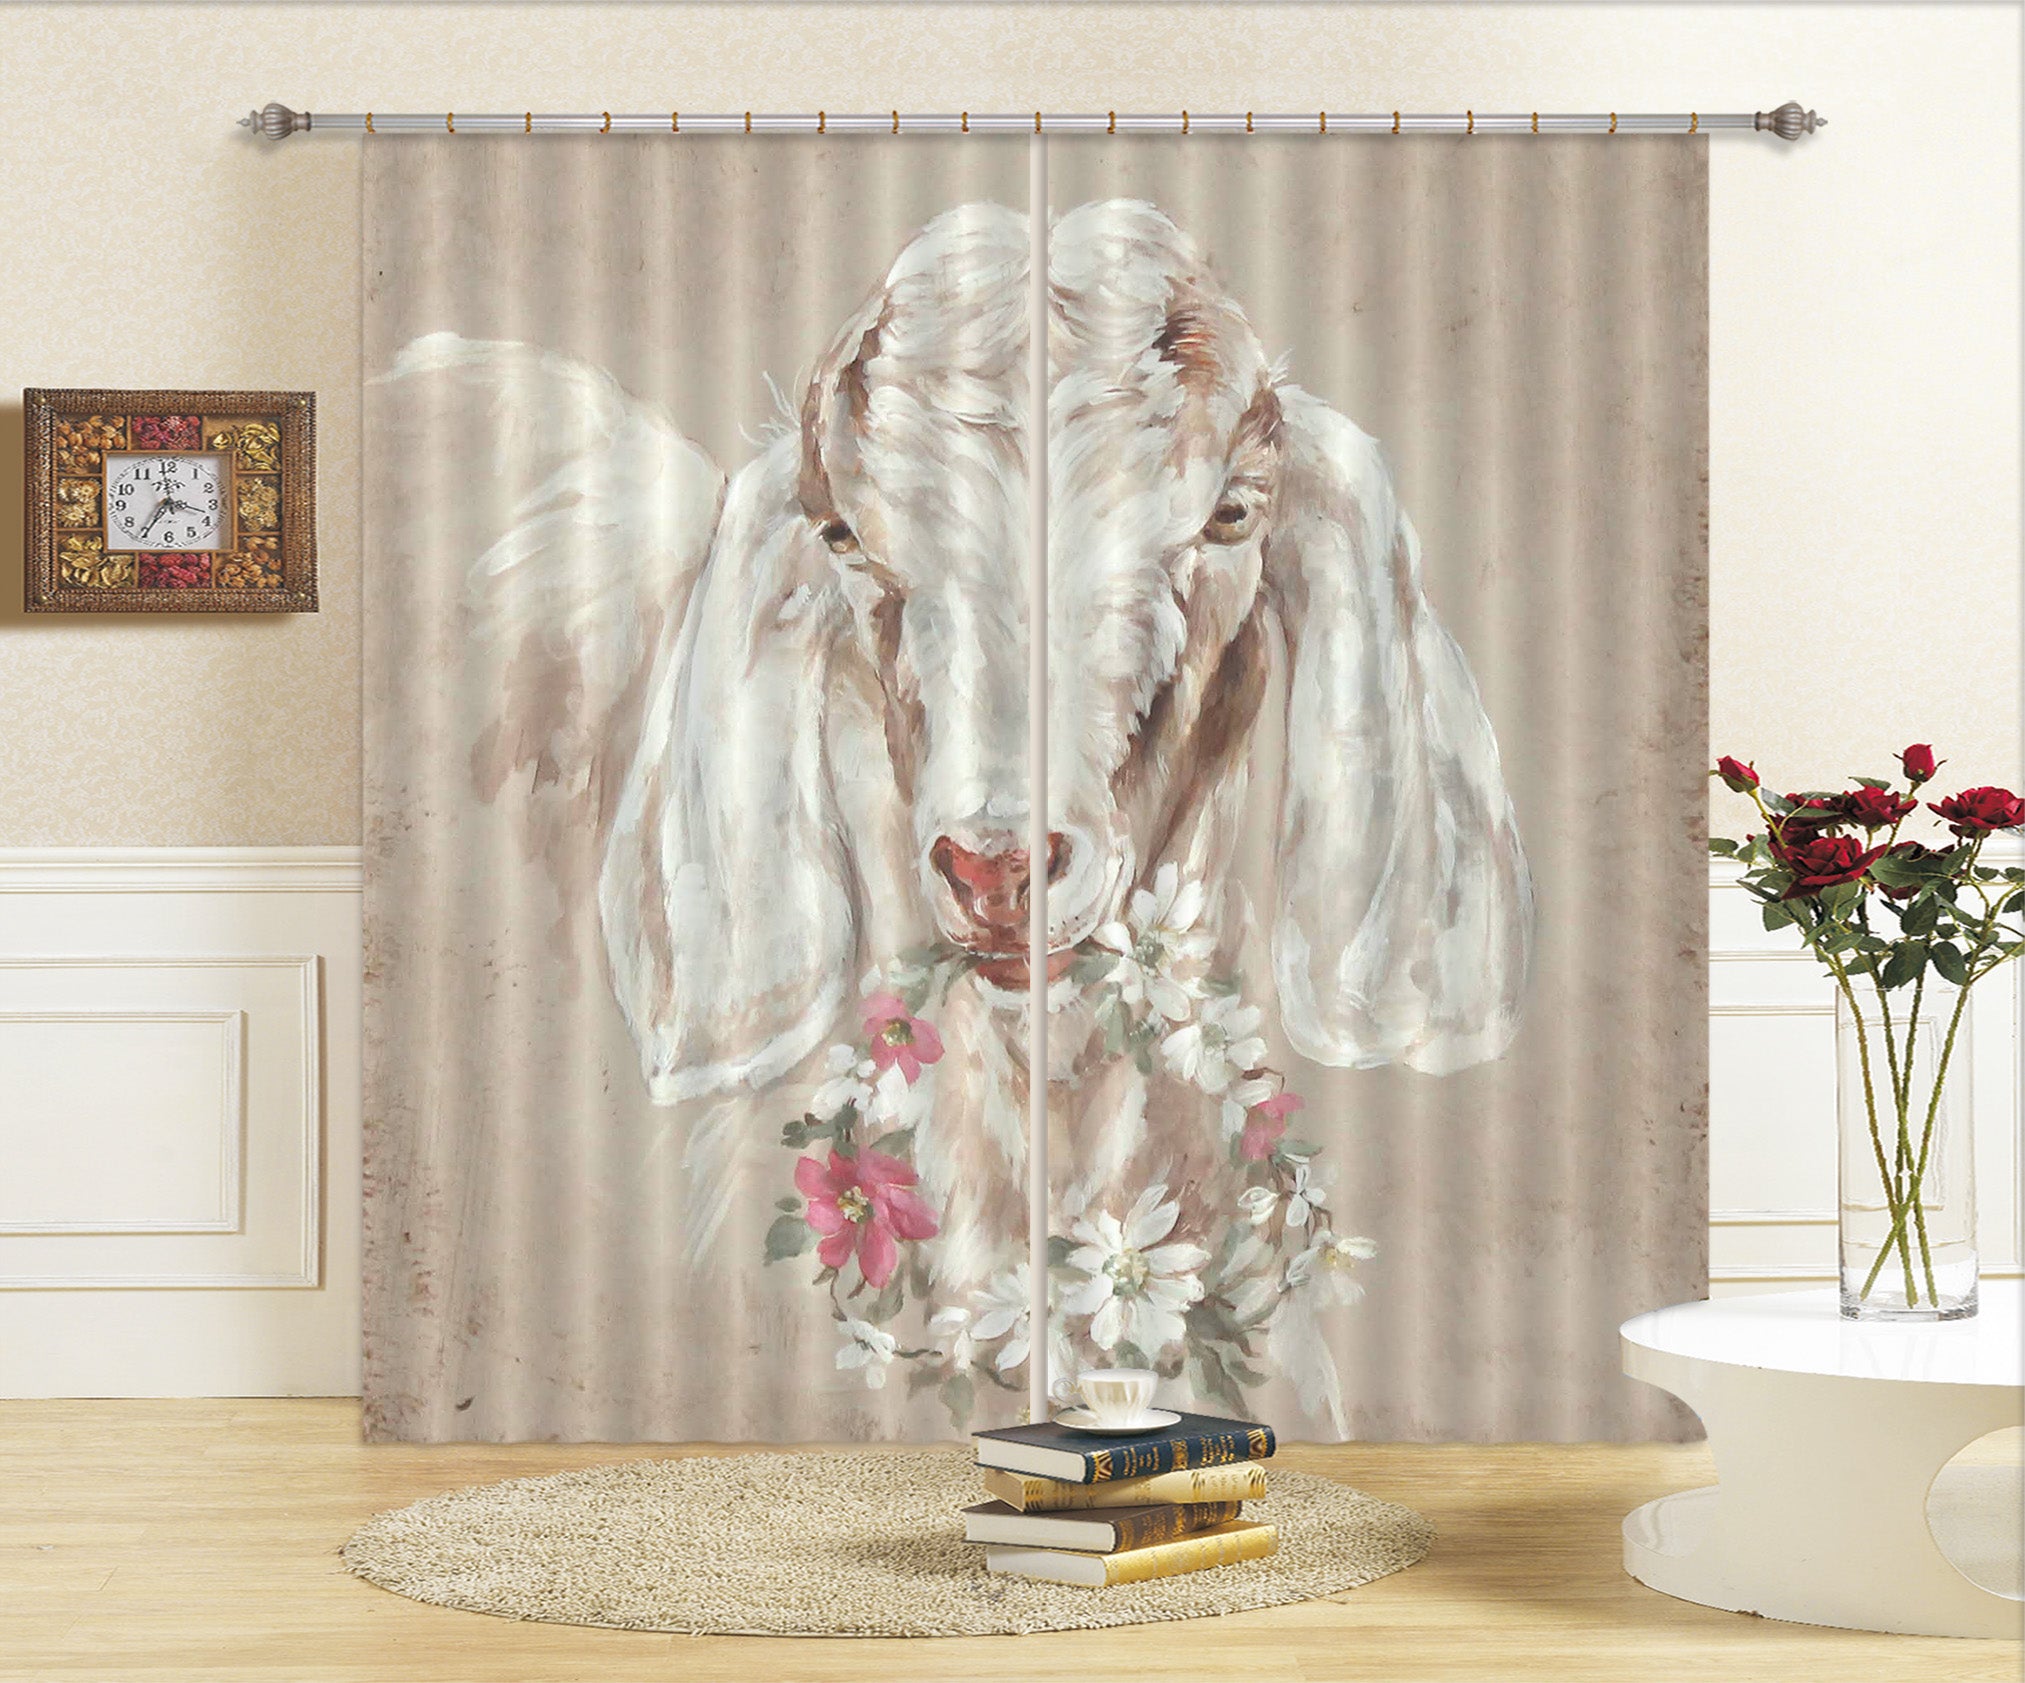 3D Sheep Wreath 3031 Debi Coules Curtain Curtains Drapes